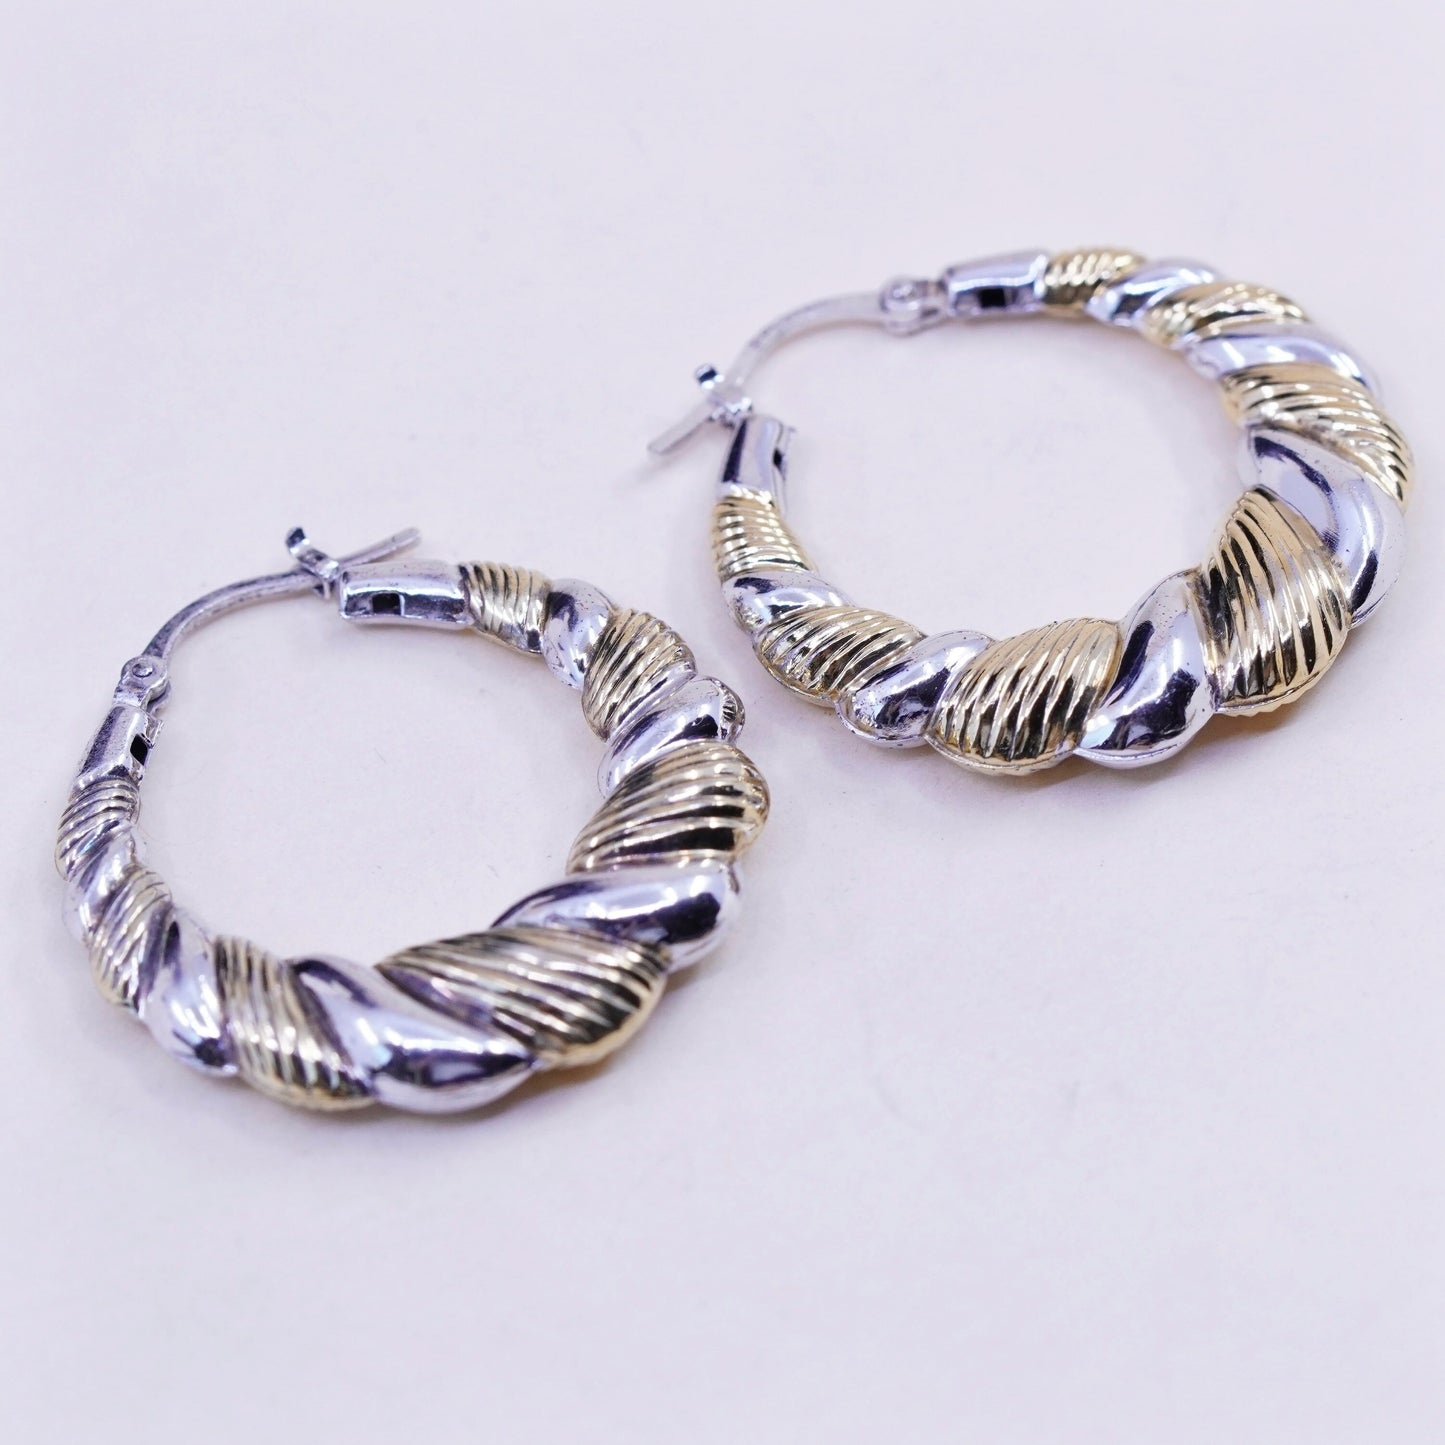 1.25”, two tone sterling silver loop earrings, Ribbed twisted hoops, huggie